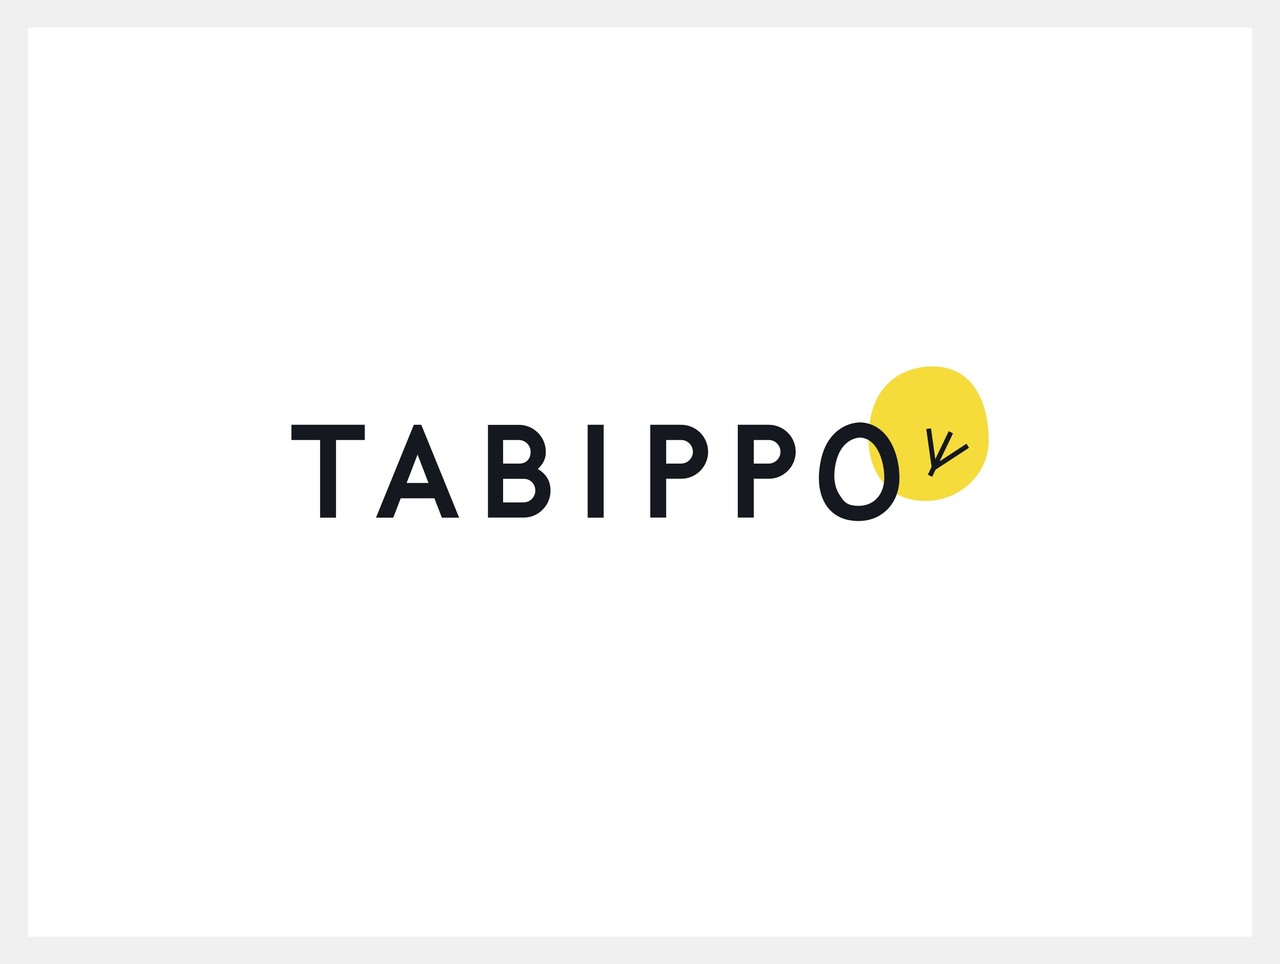 Tabippoの新しいロゴとデザイン リブランディングの裏側も公開